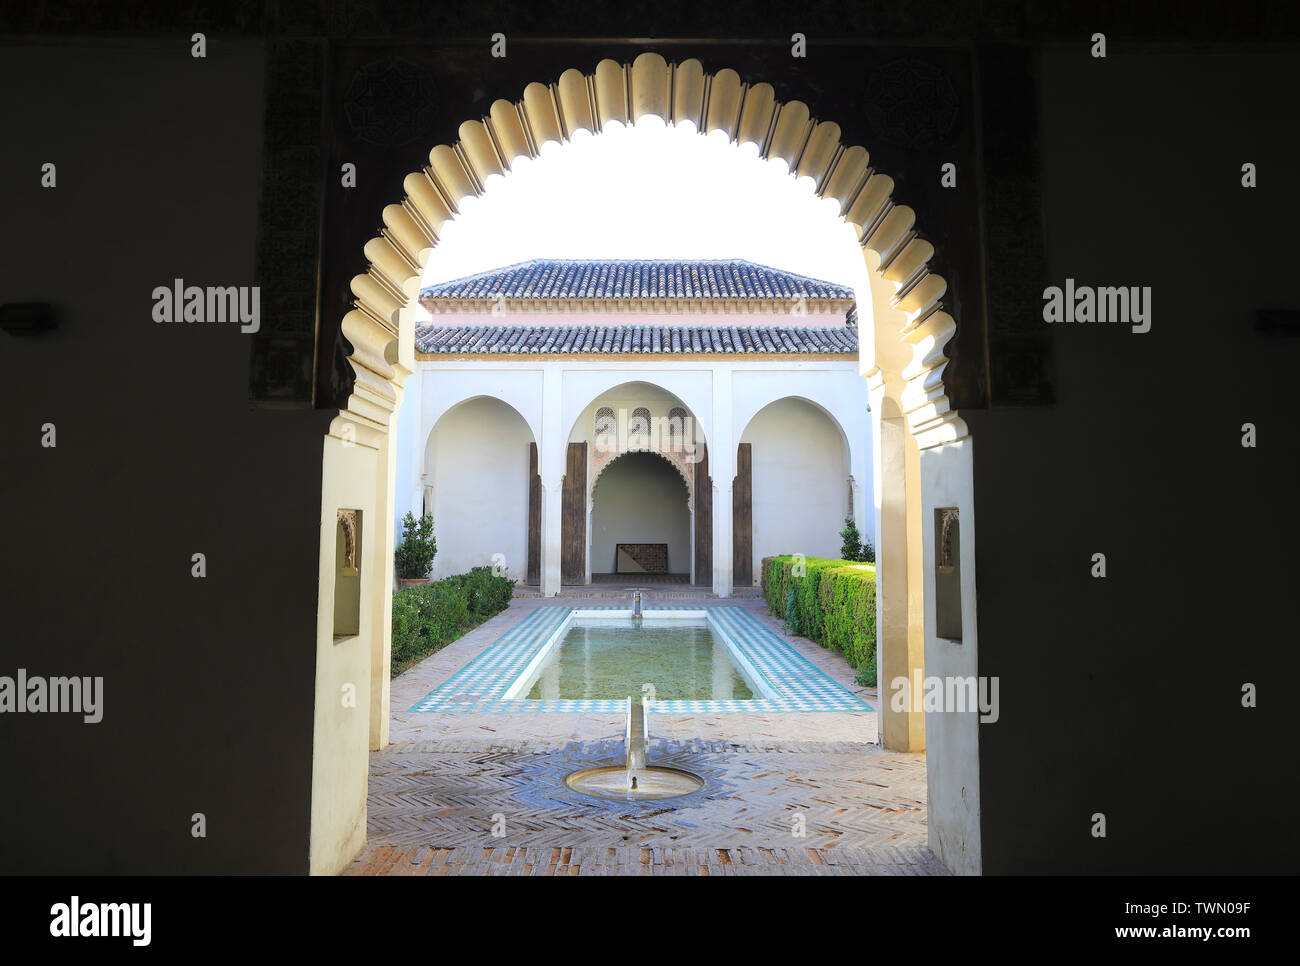 La cour-jardin avec piscine à la citadelle Maure de l'Alcazaba dans la ville de Malaga, en Espagne, en Europe Banque D'Images